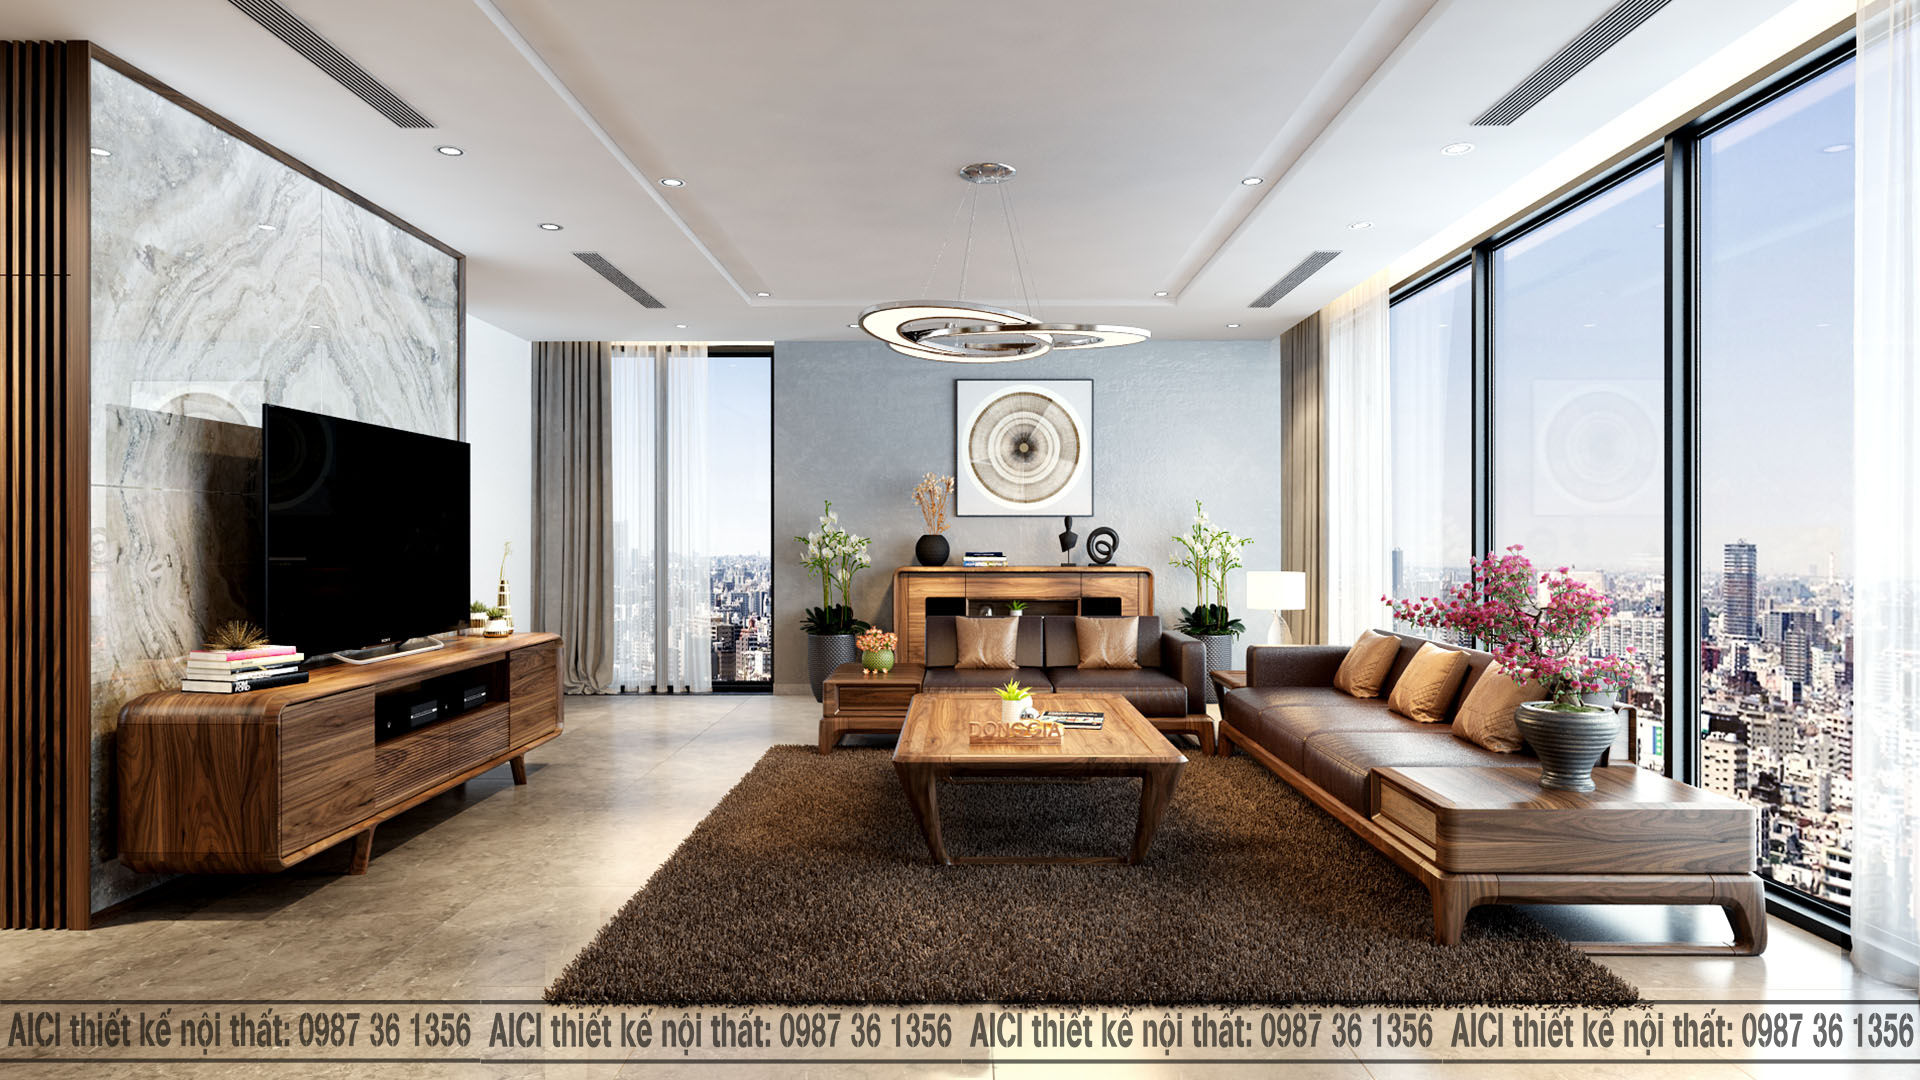 Những mẫu phòng khách thiết kế nội thất đẹp 2021 – Nội thất Kim Cương